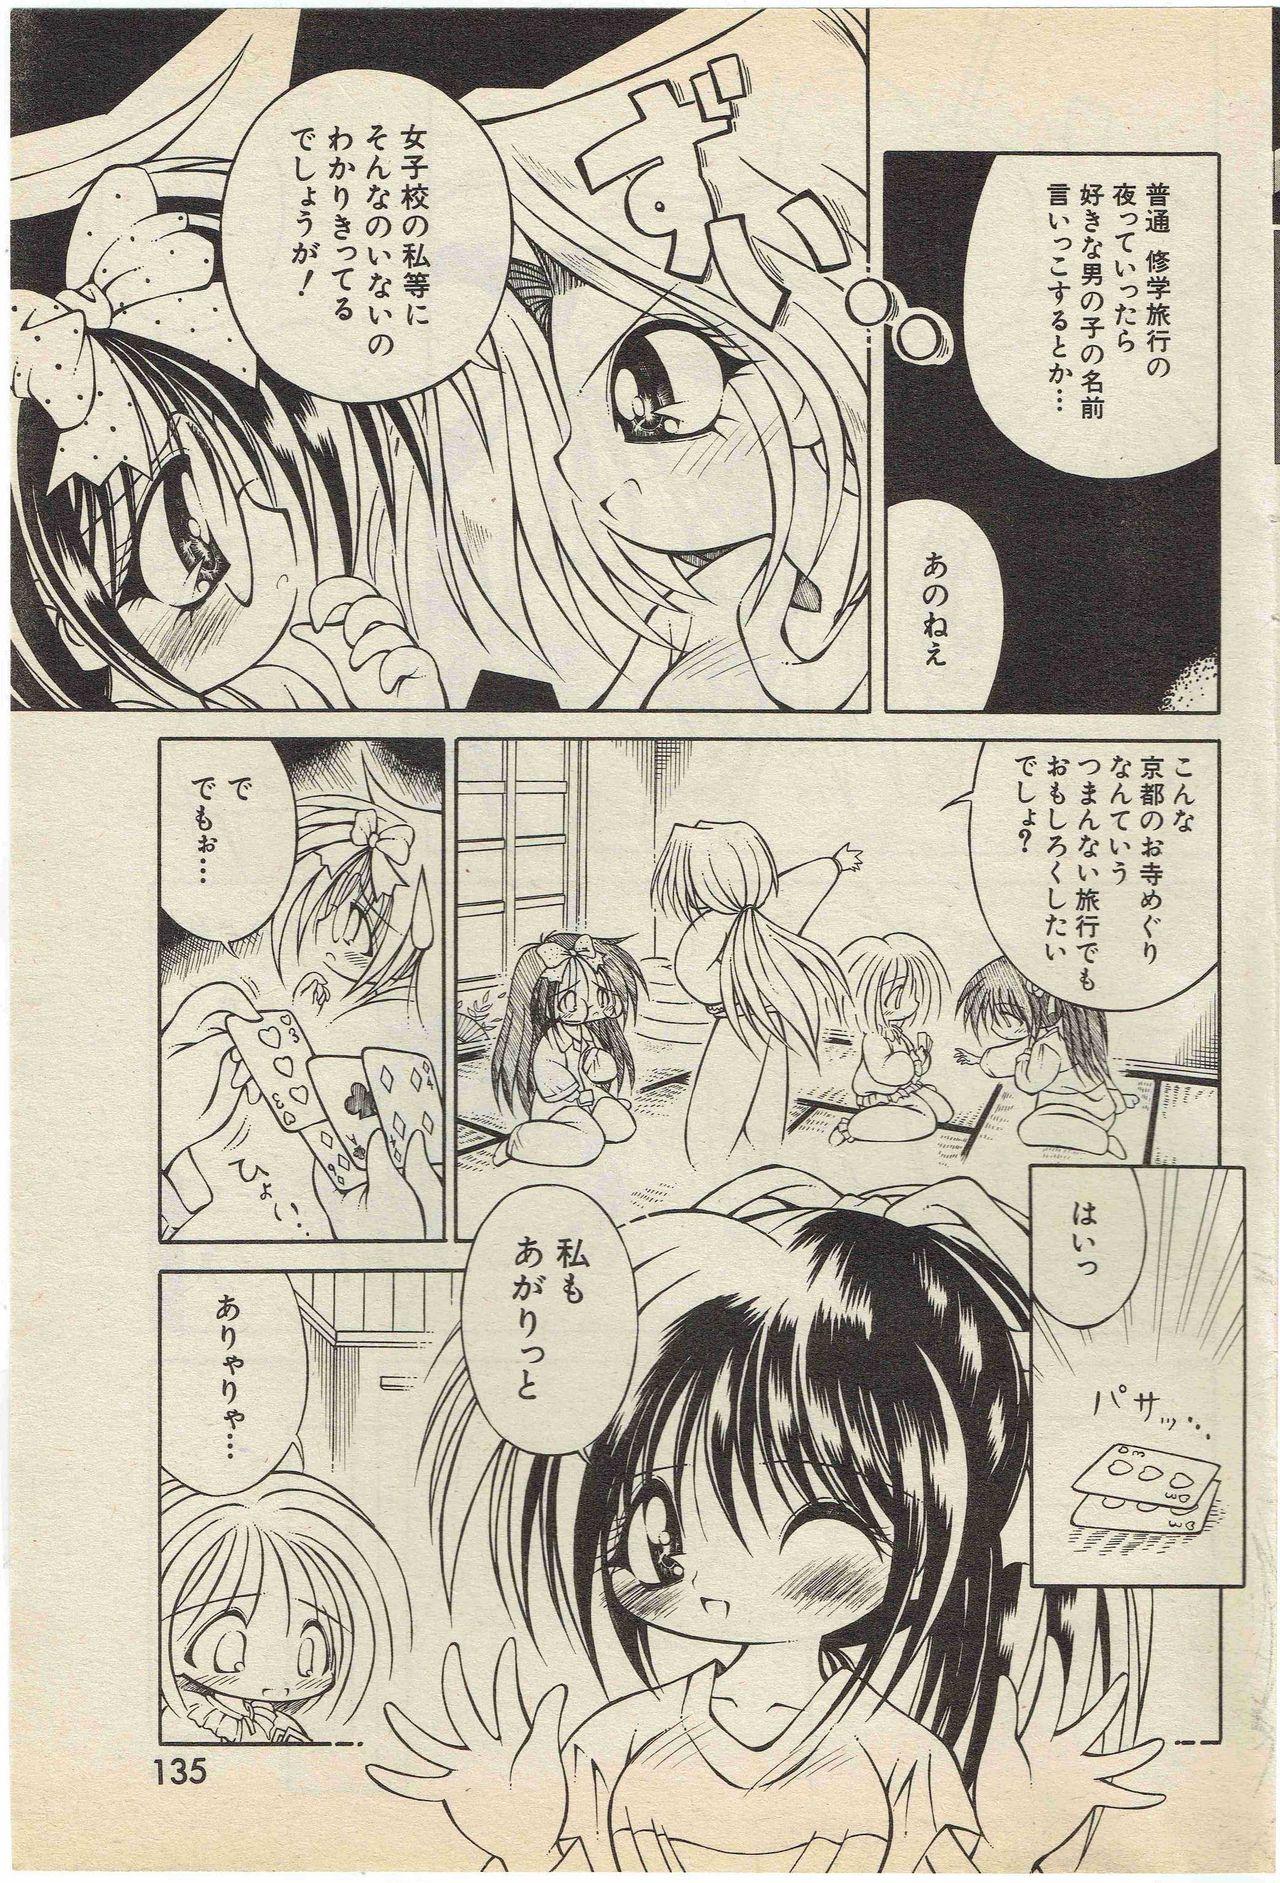 KanzakiShirou-BettingNight 1998-5 2